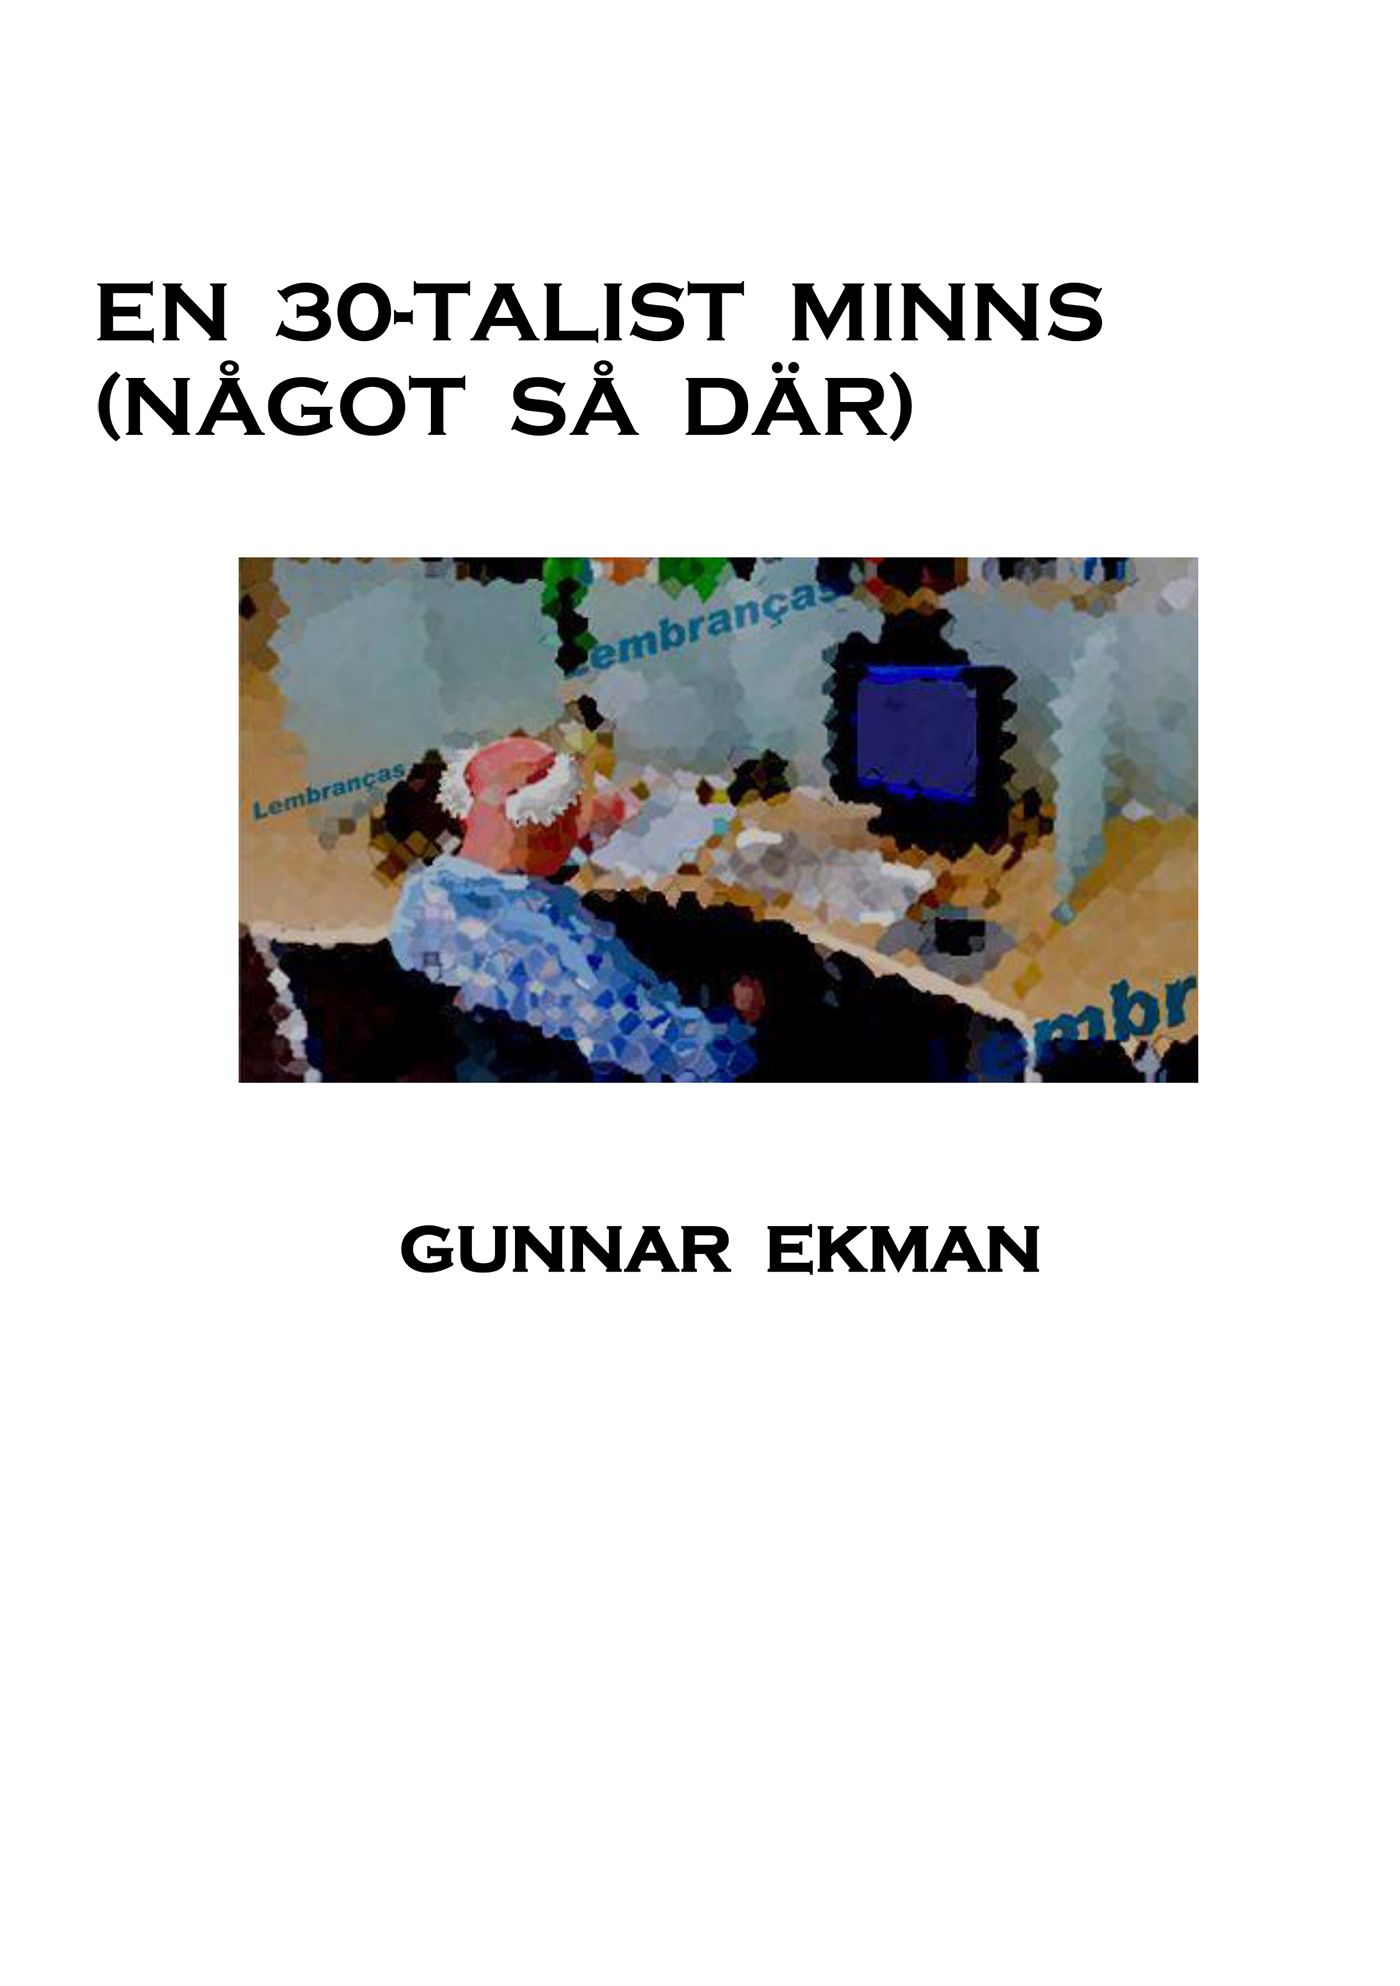 En 30-talist minns (Något så där), eBook by Gunnar Ekman